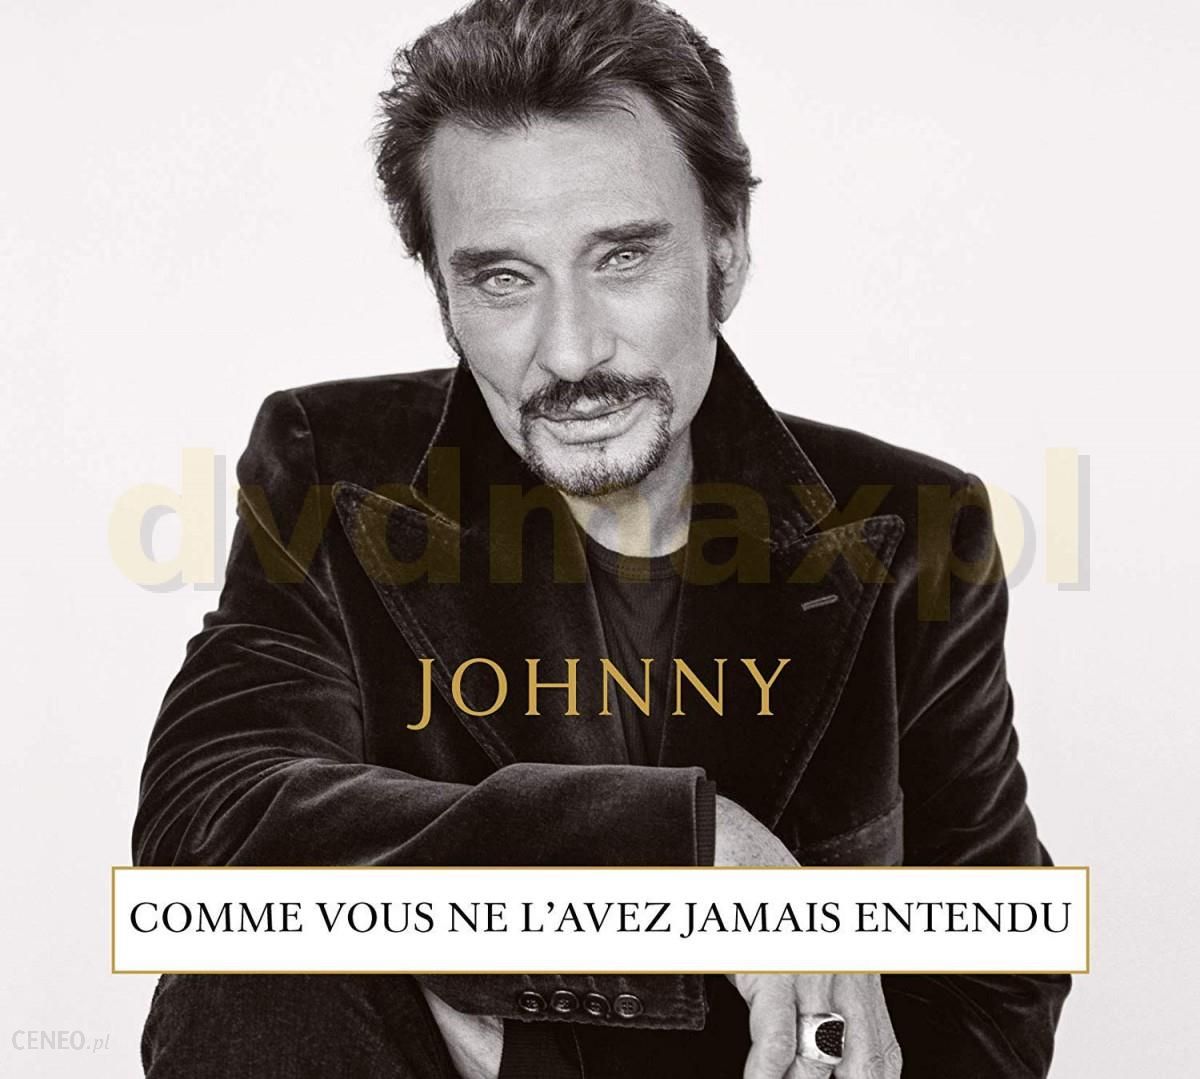 Płyta kompaktowa Johnny Hallyday: Johnny [CD] - Ceny i opinie 